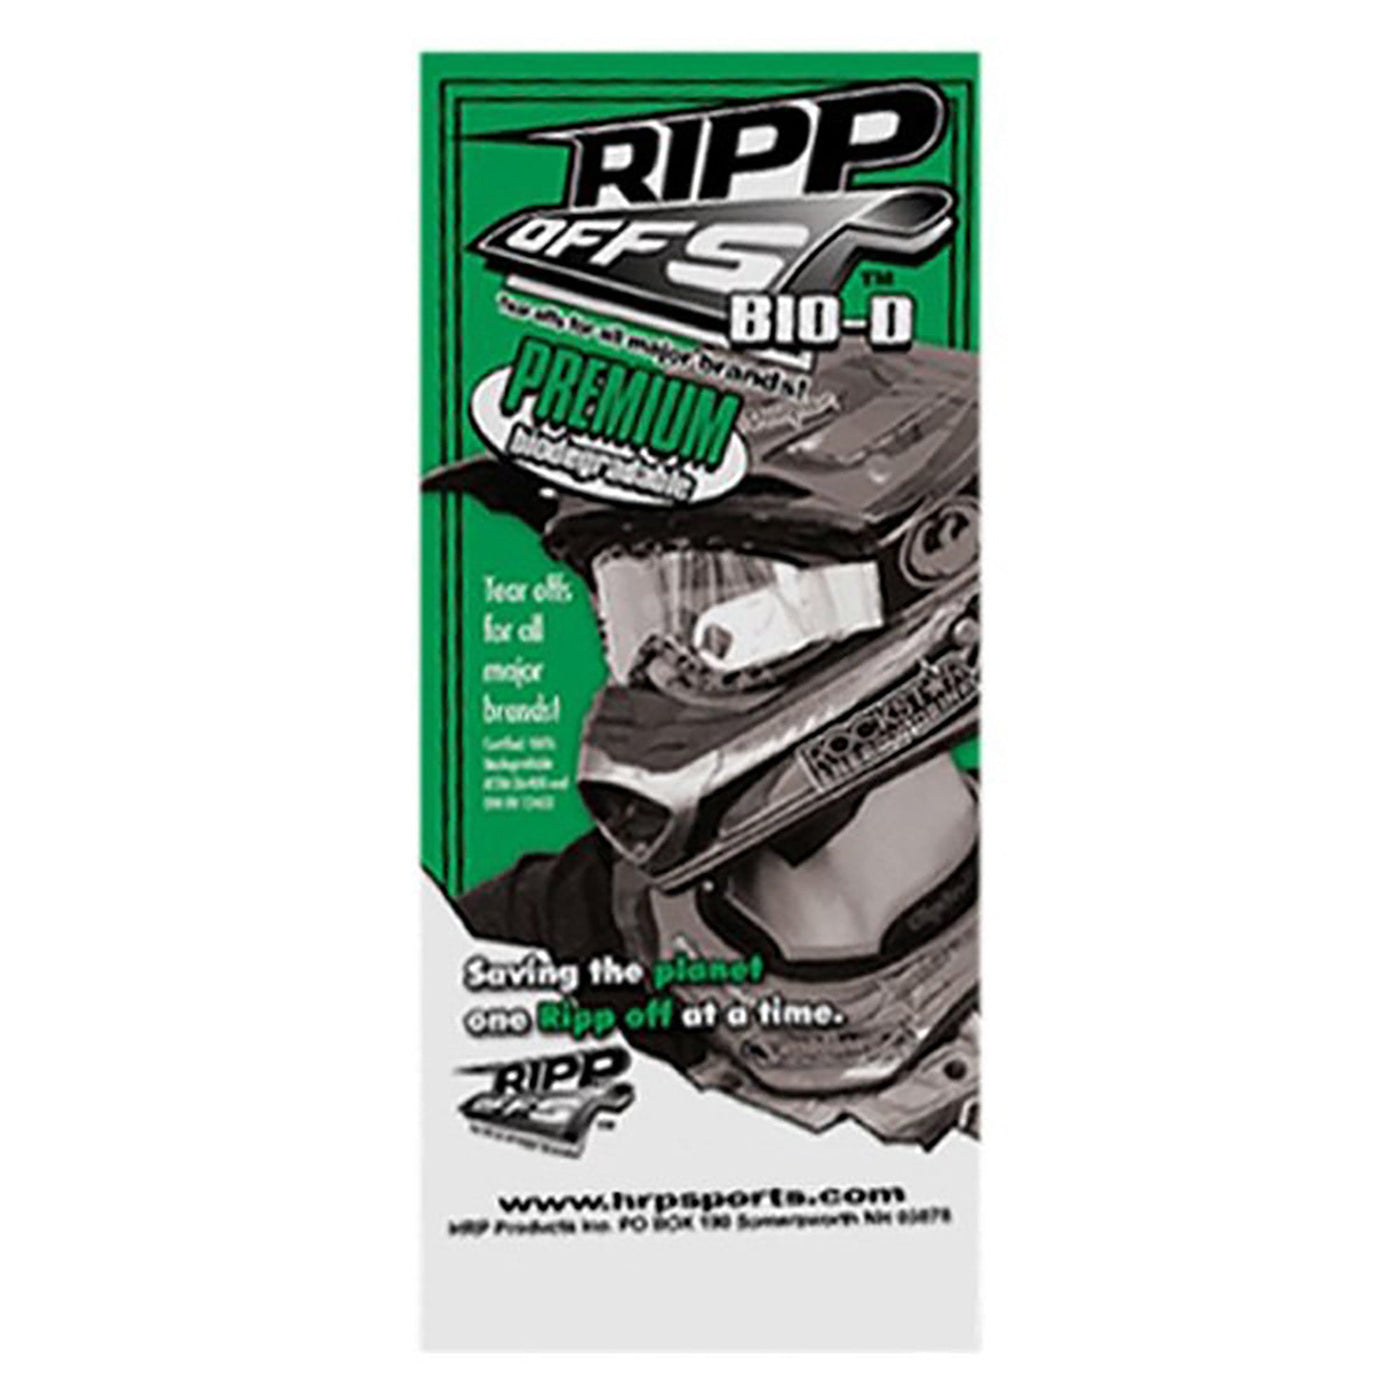 Hrp RO-D20 Ripp Offs #RO-D20